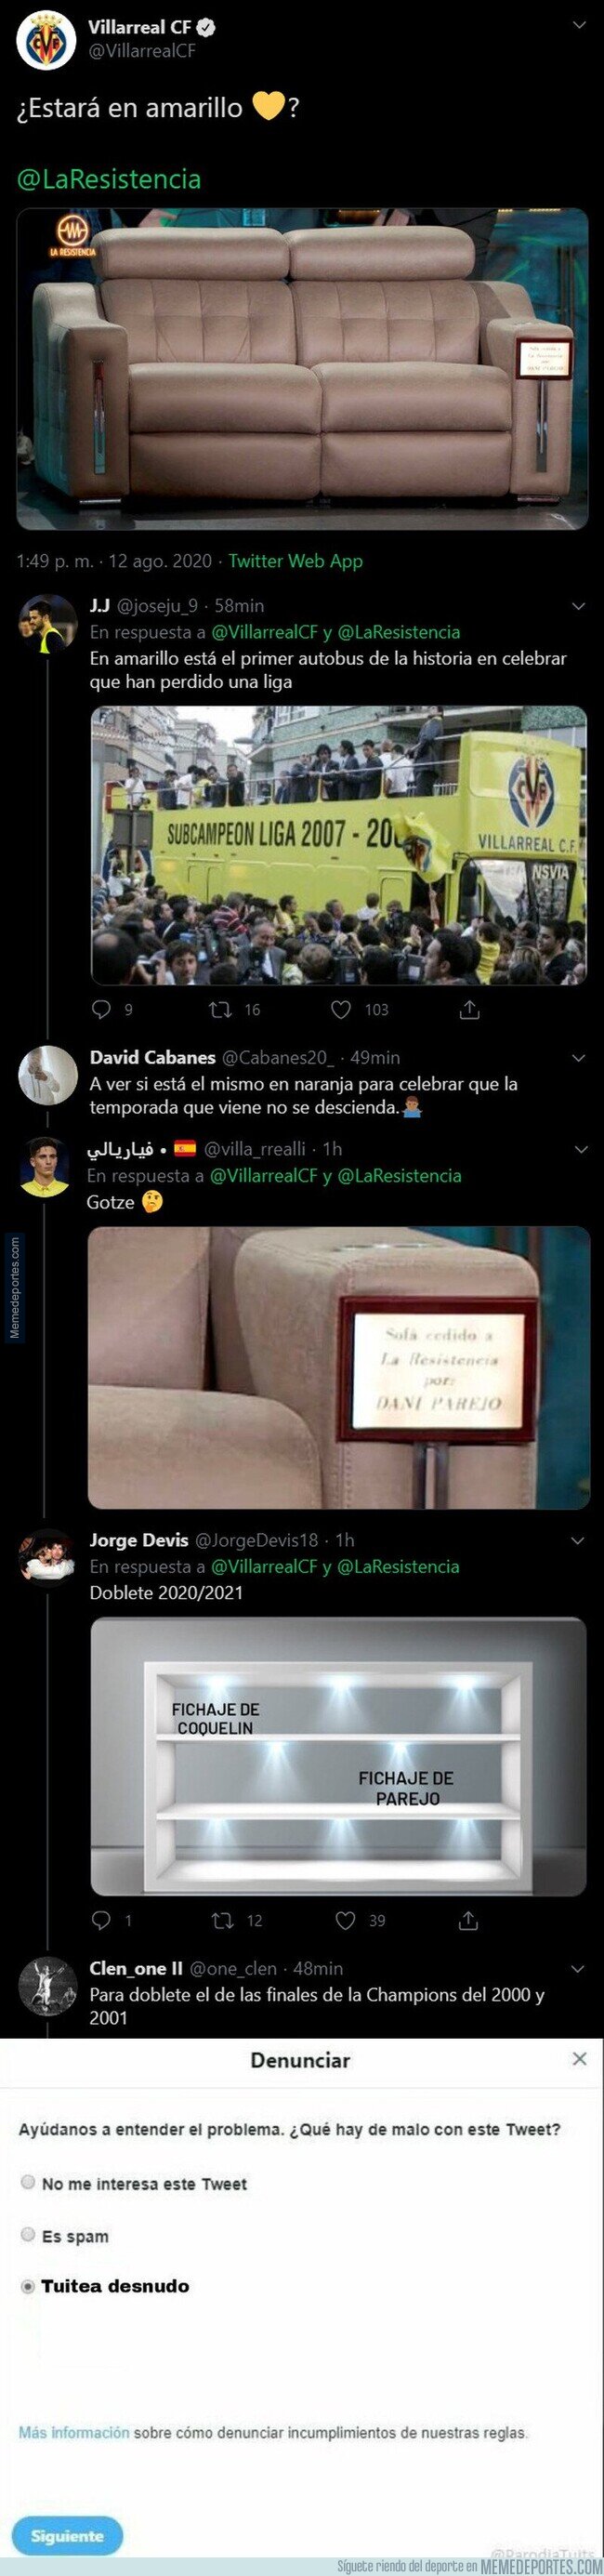 1112036 - El aplaudido tuit del Villarreal mencionando a 'La Resistencia' tras su fichaje de Dani Parejo